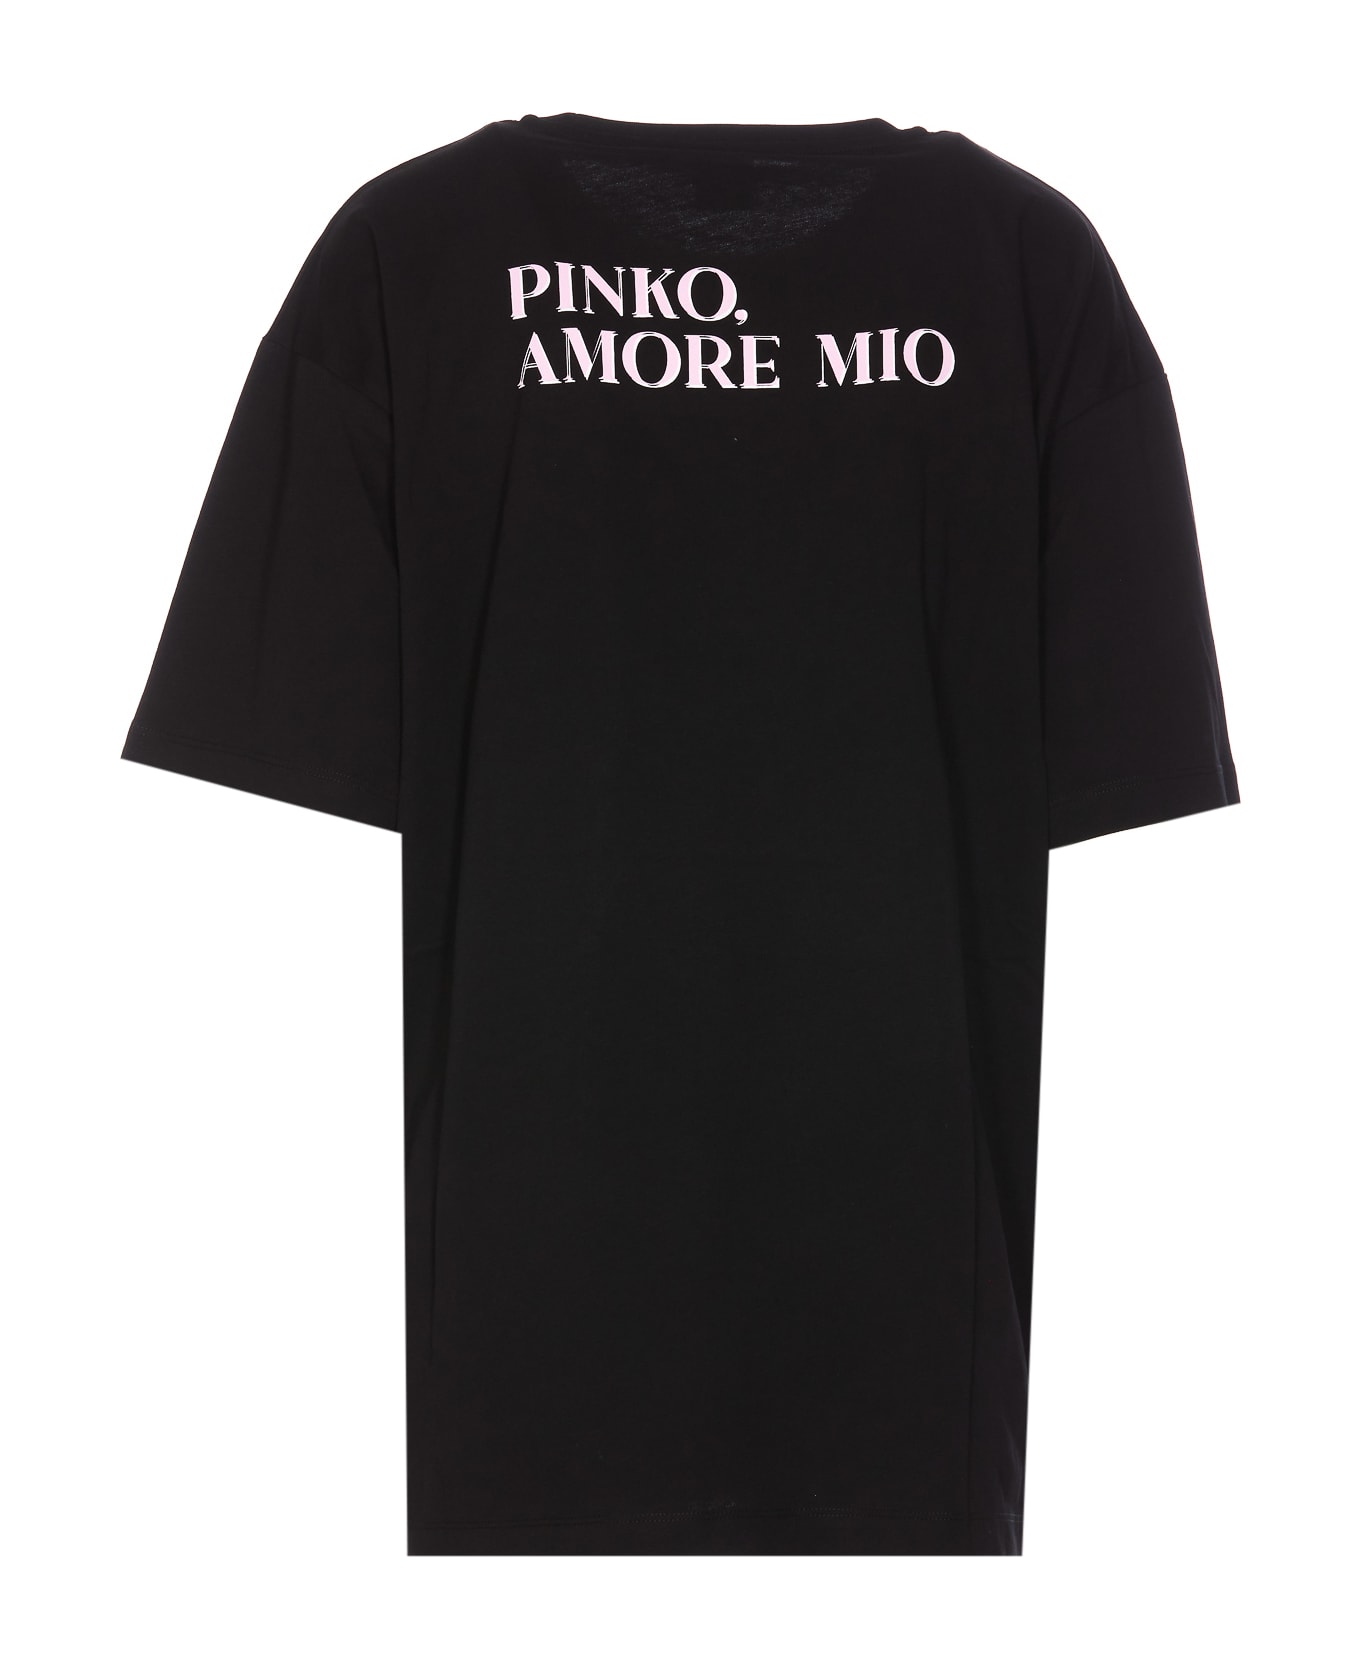 Pinko Televisivo T-shirt - Black